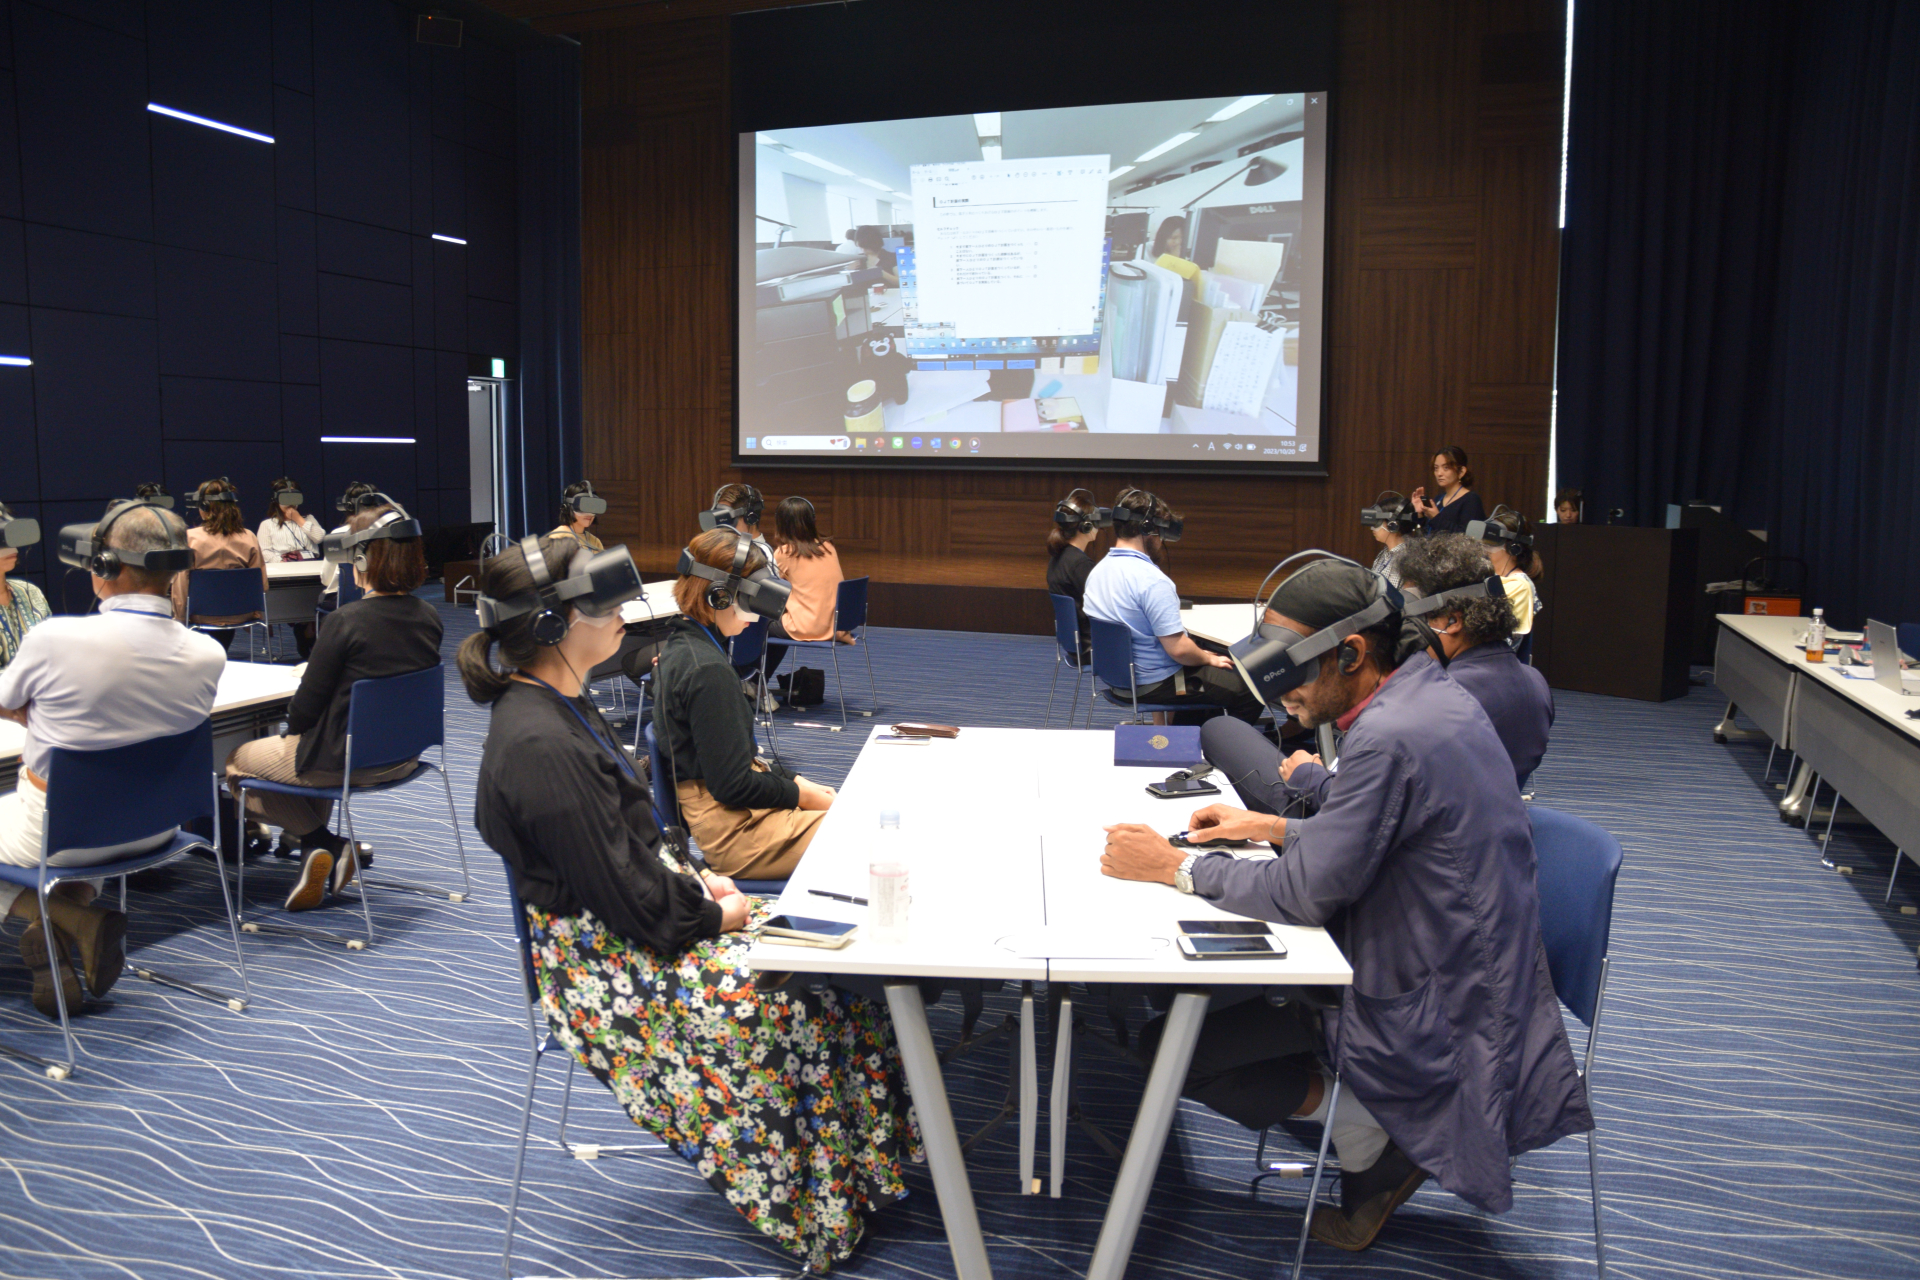 VRを通して職場の「アンコンシャスバイアス」について考える<br>D&Iプロジェクトチームが職員向けの研修を開催